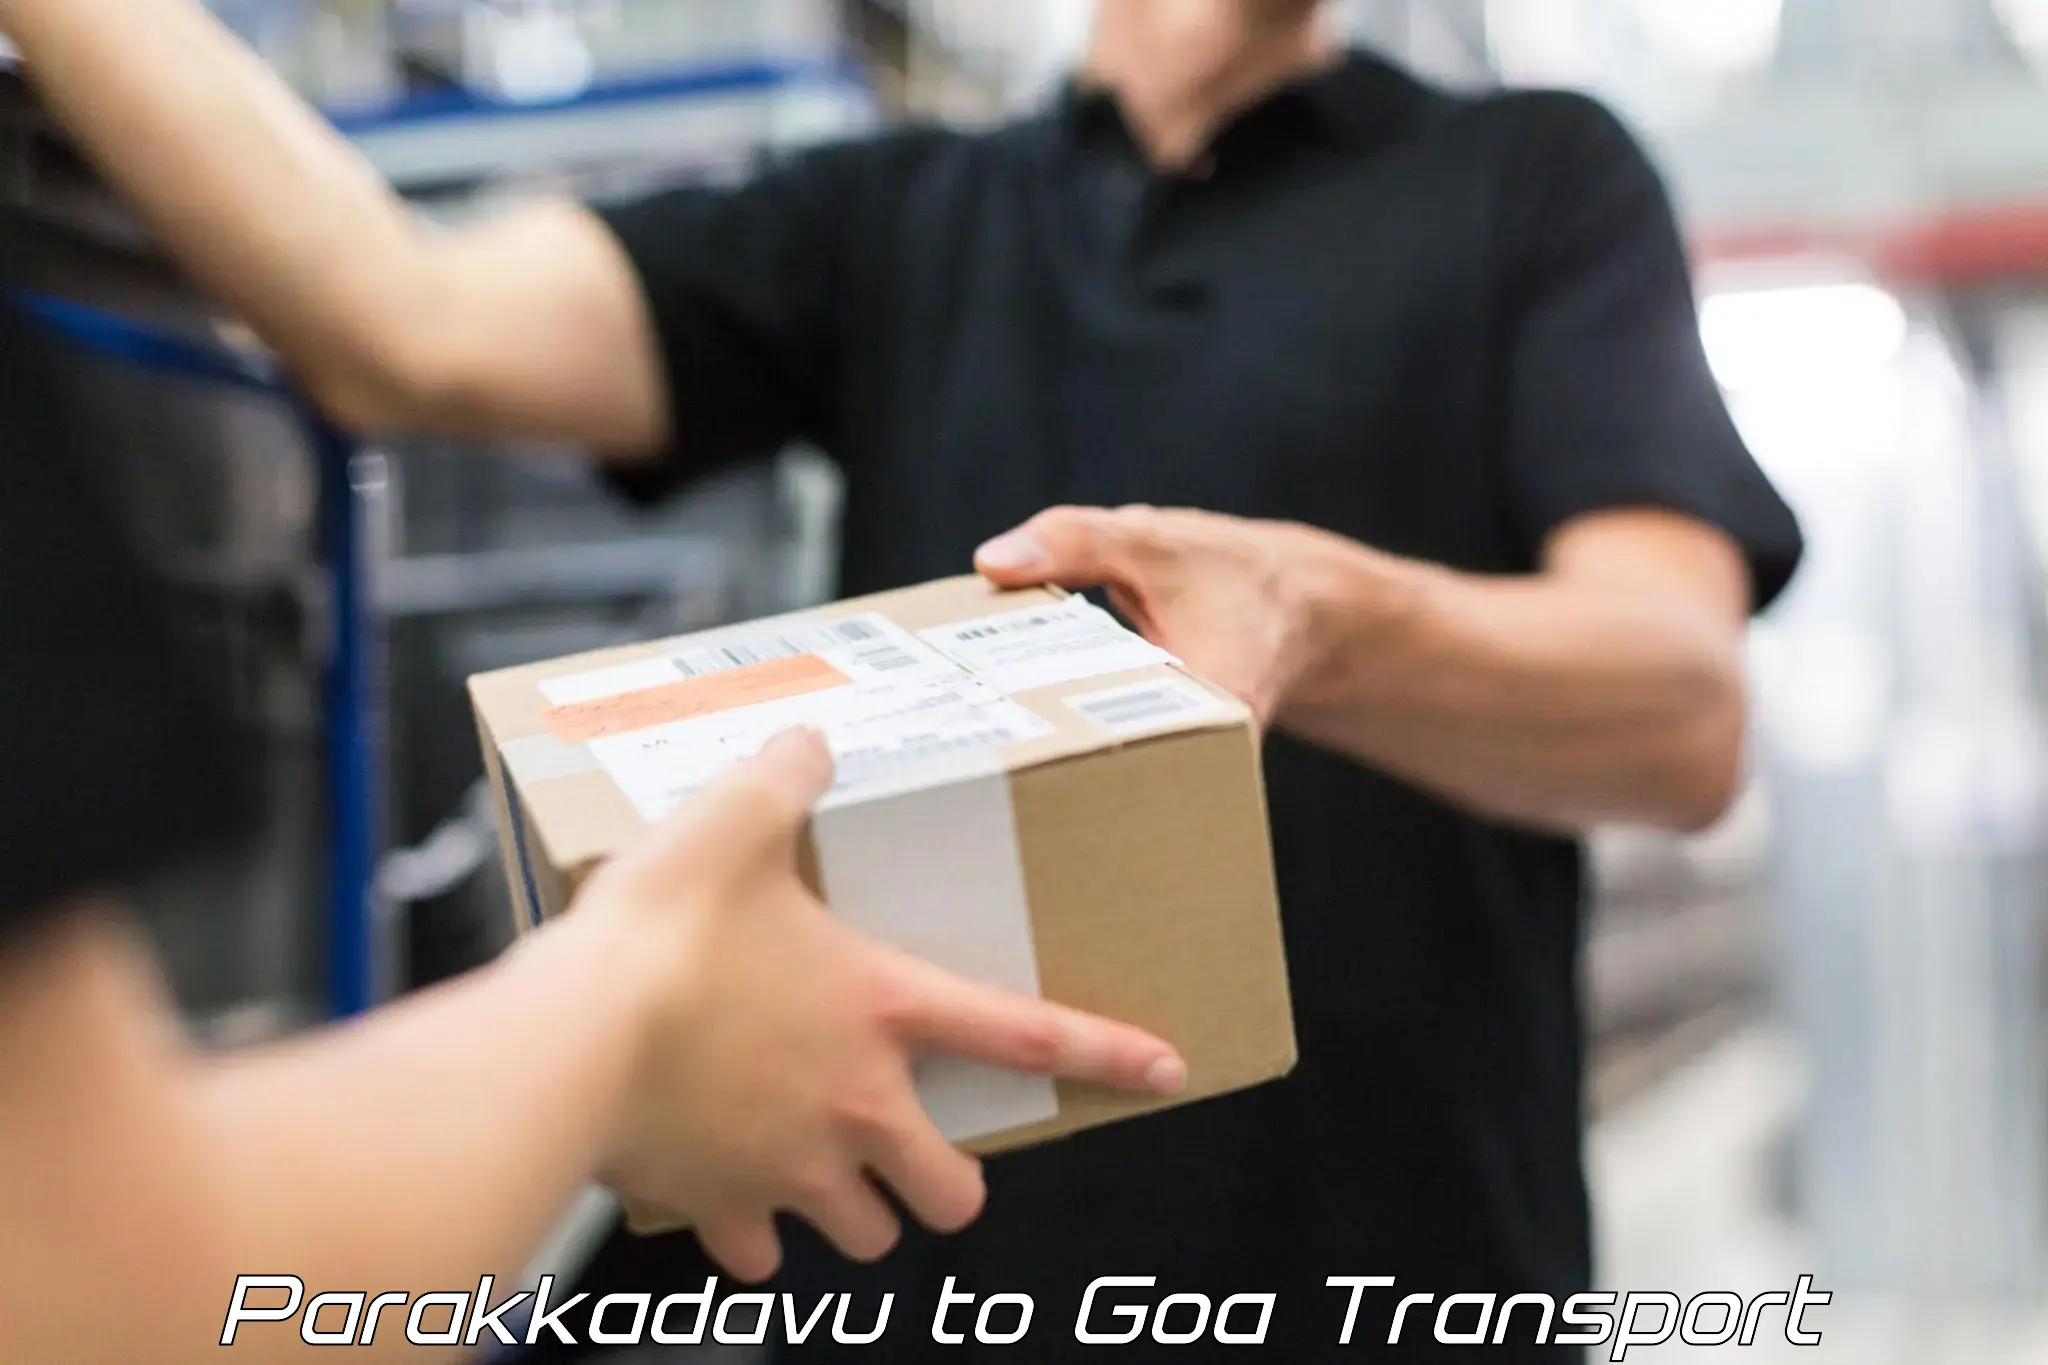 Commercial transport service Parakkadavu to Goa